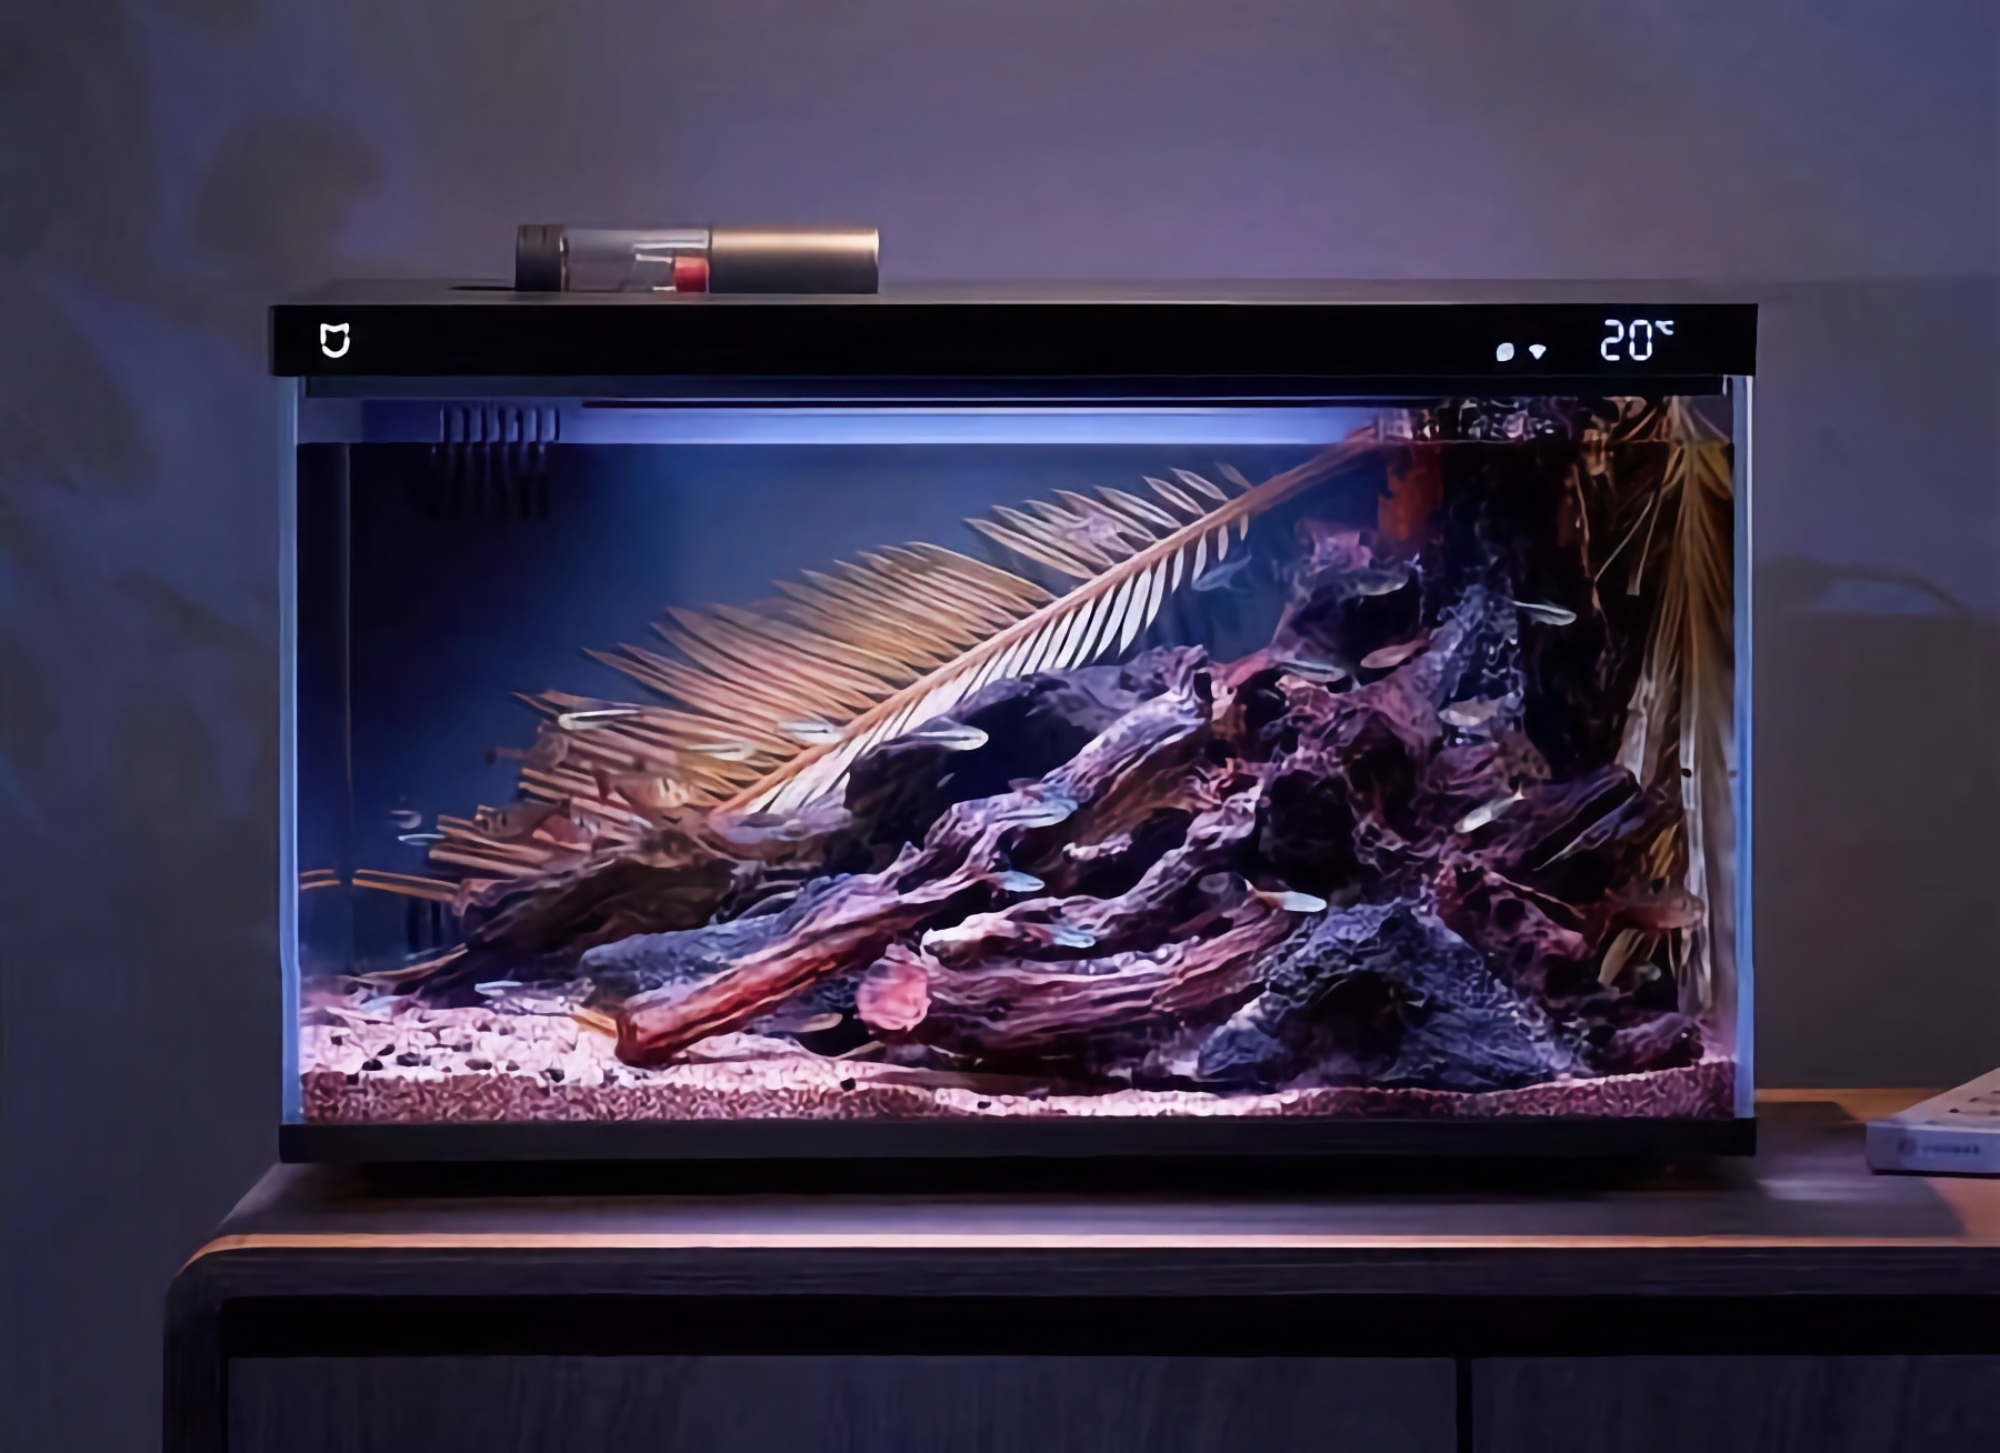 Xiaomi ha presentato un acquario intelligente con filtro dell'acqua, sensore di temperatura, illuminazione RGB e funzione di alimentazione a distanza